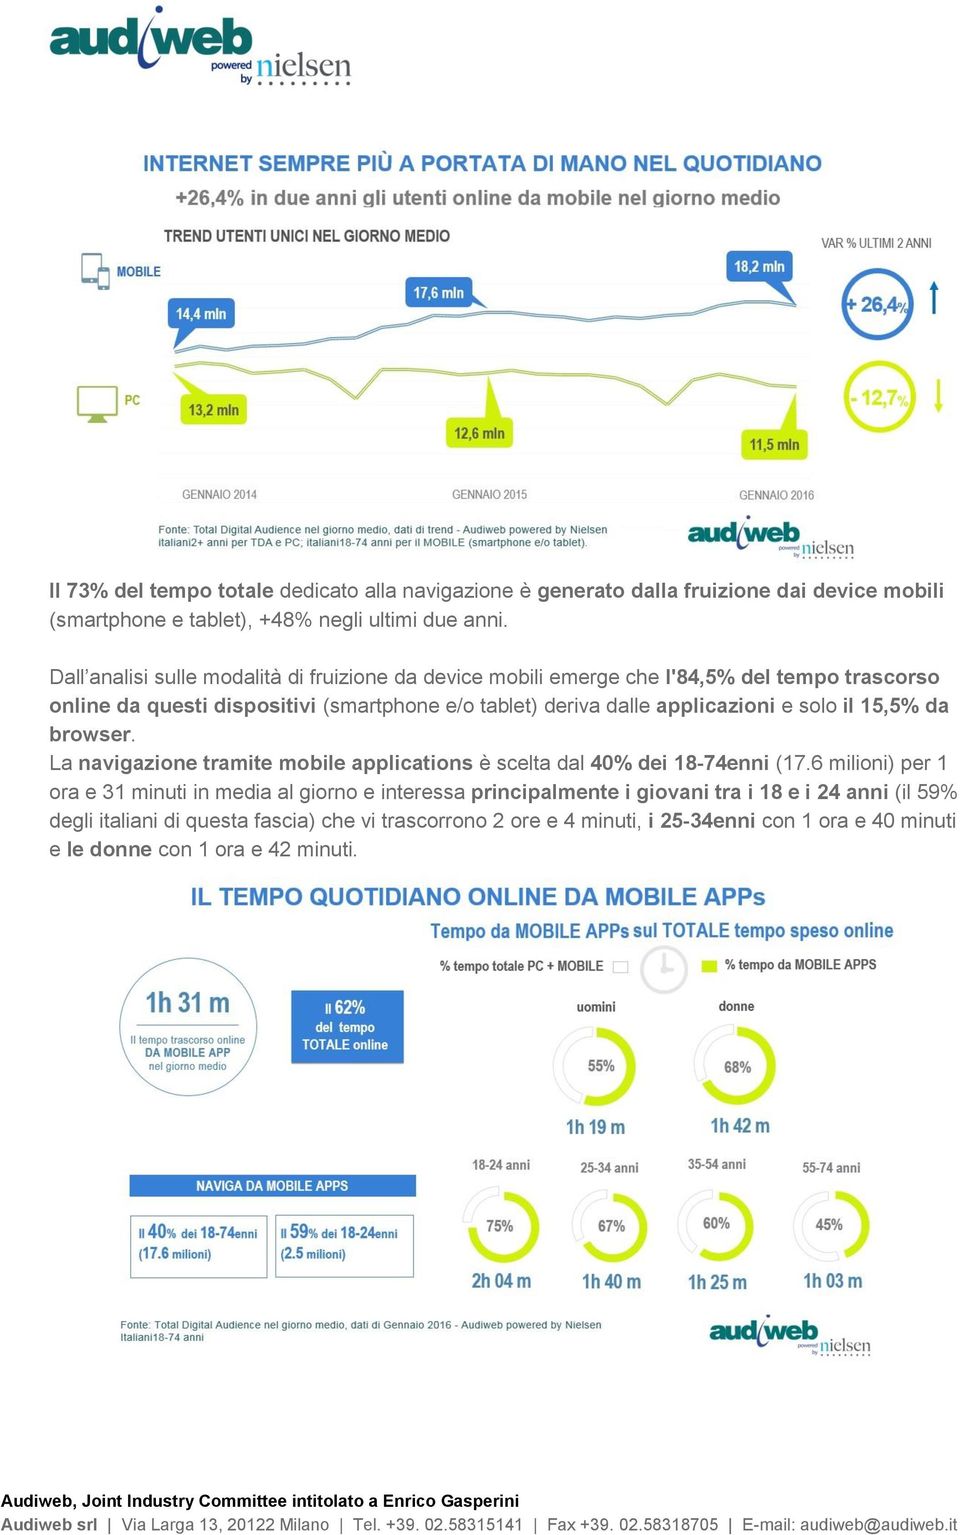 applicazioni e solo il 15,5% da browser. La navigazione tramite mobile applications è scelta dal 40% dei 18-74enni (17.